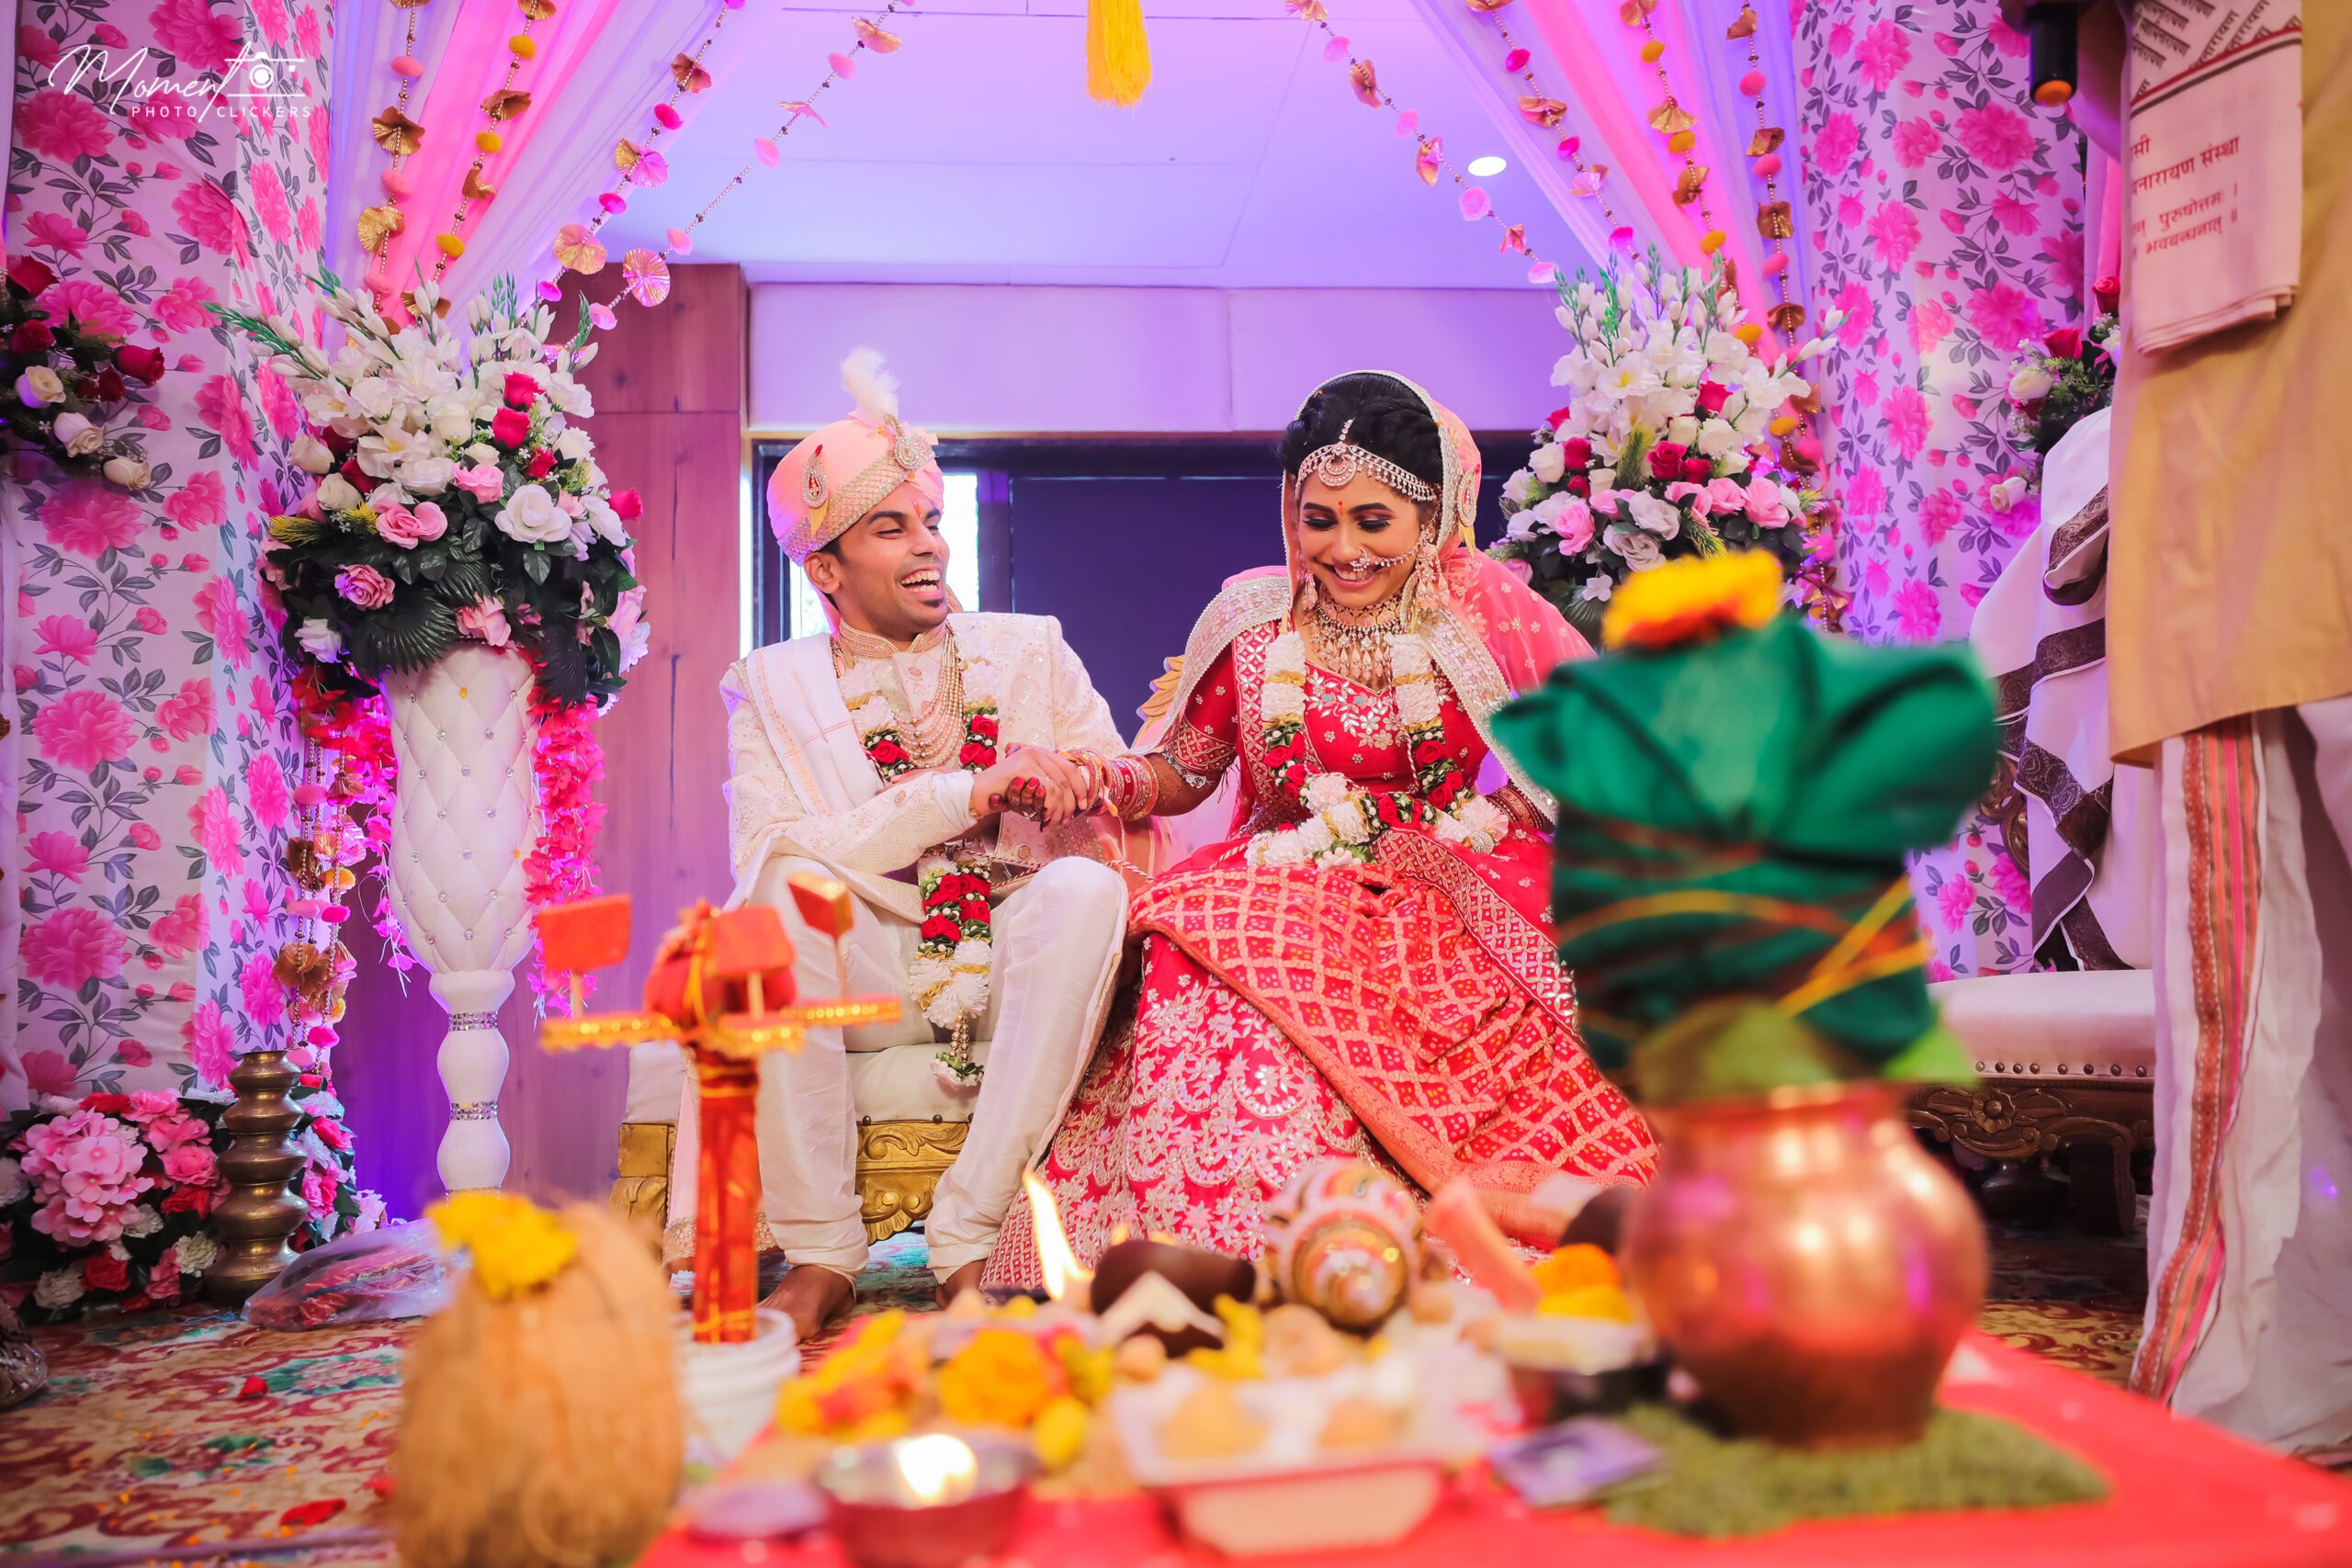 Lovely Couple with joyful Smile | Wedding Shoot